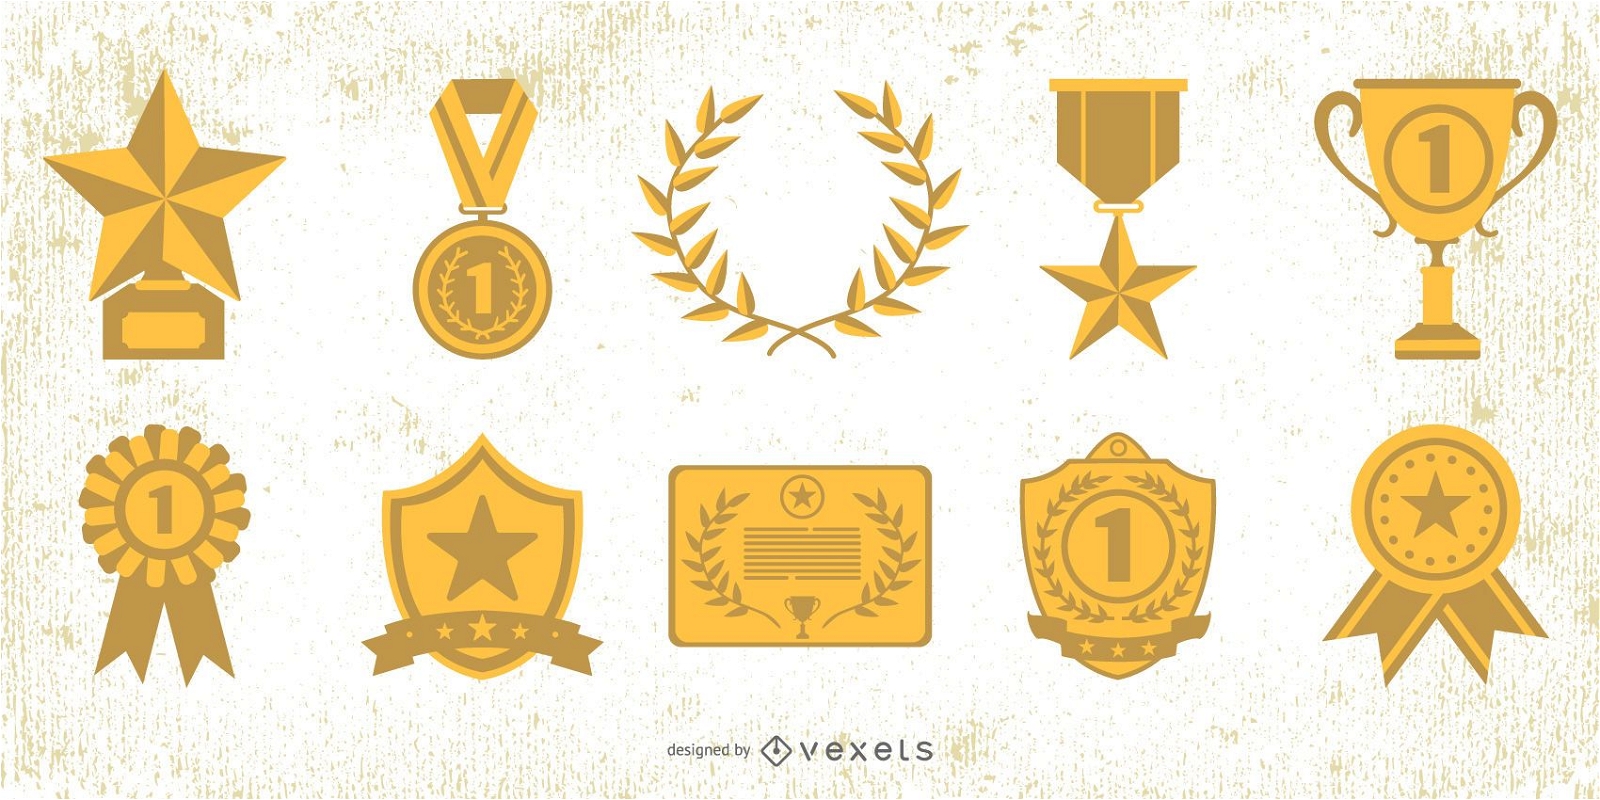 Pacote de Elementos do Prêmio Medalha de Ouro